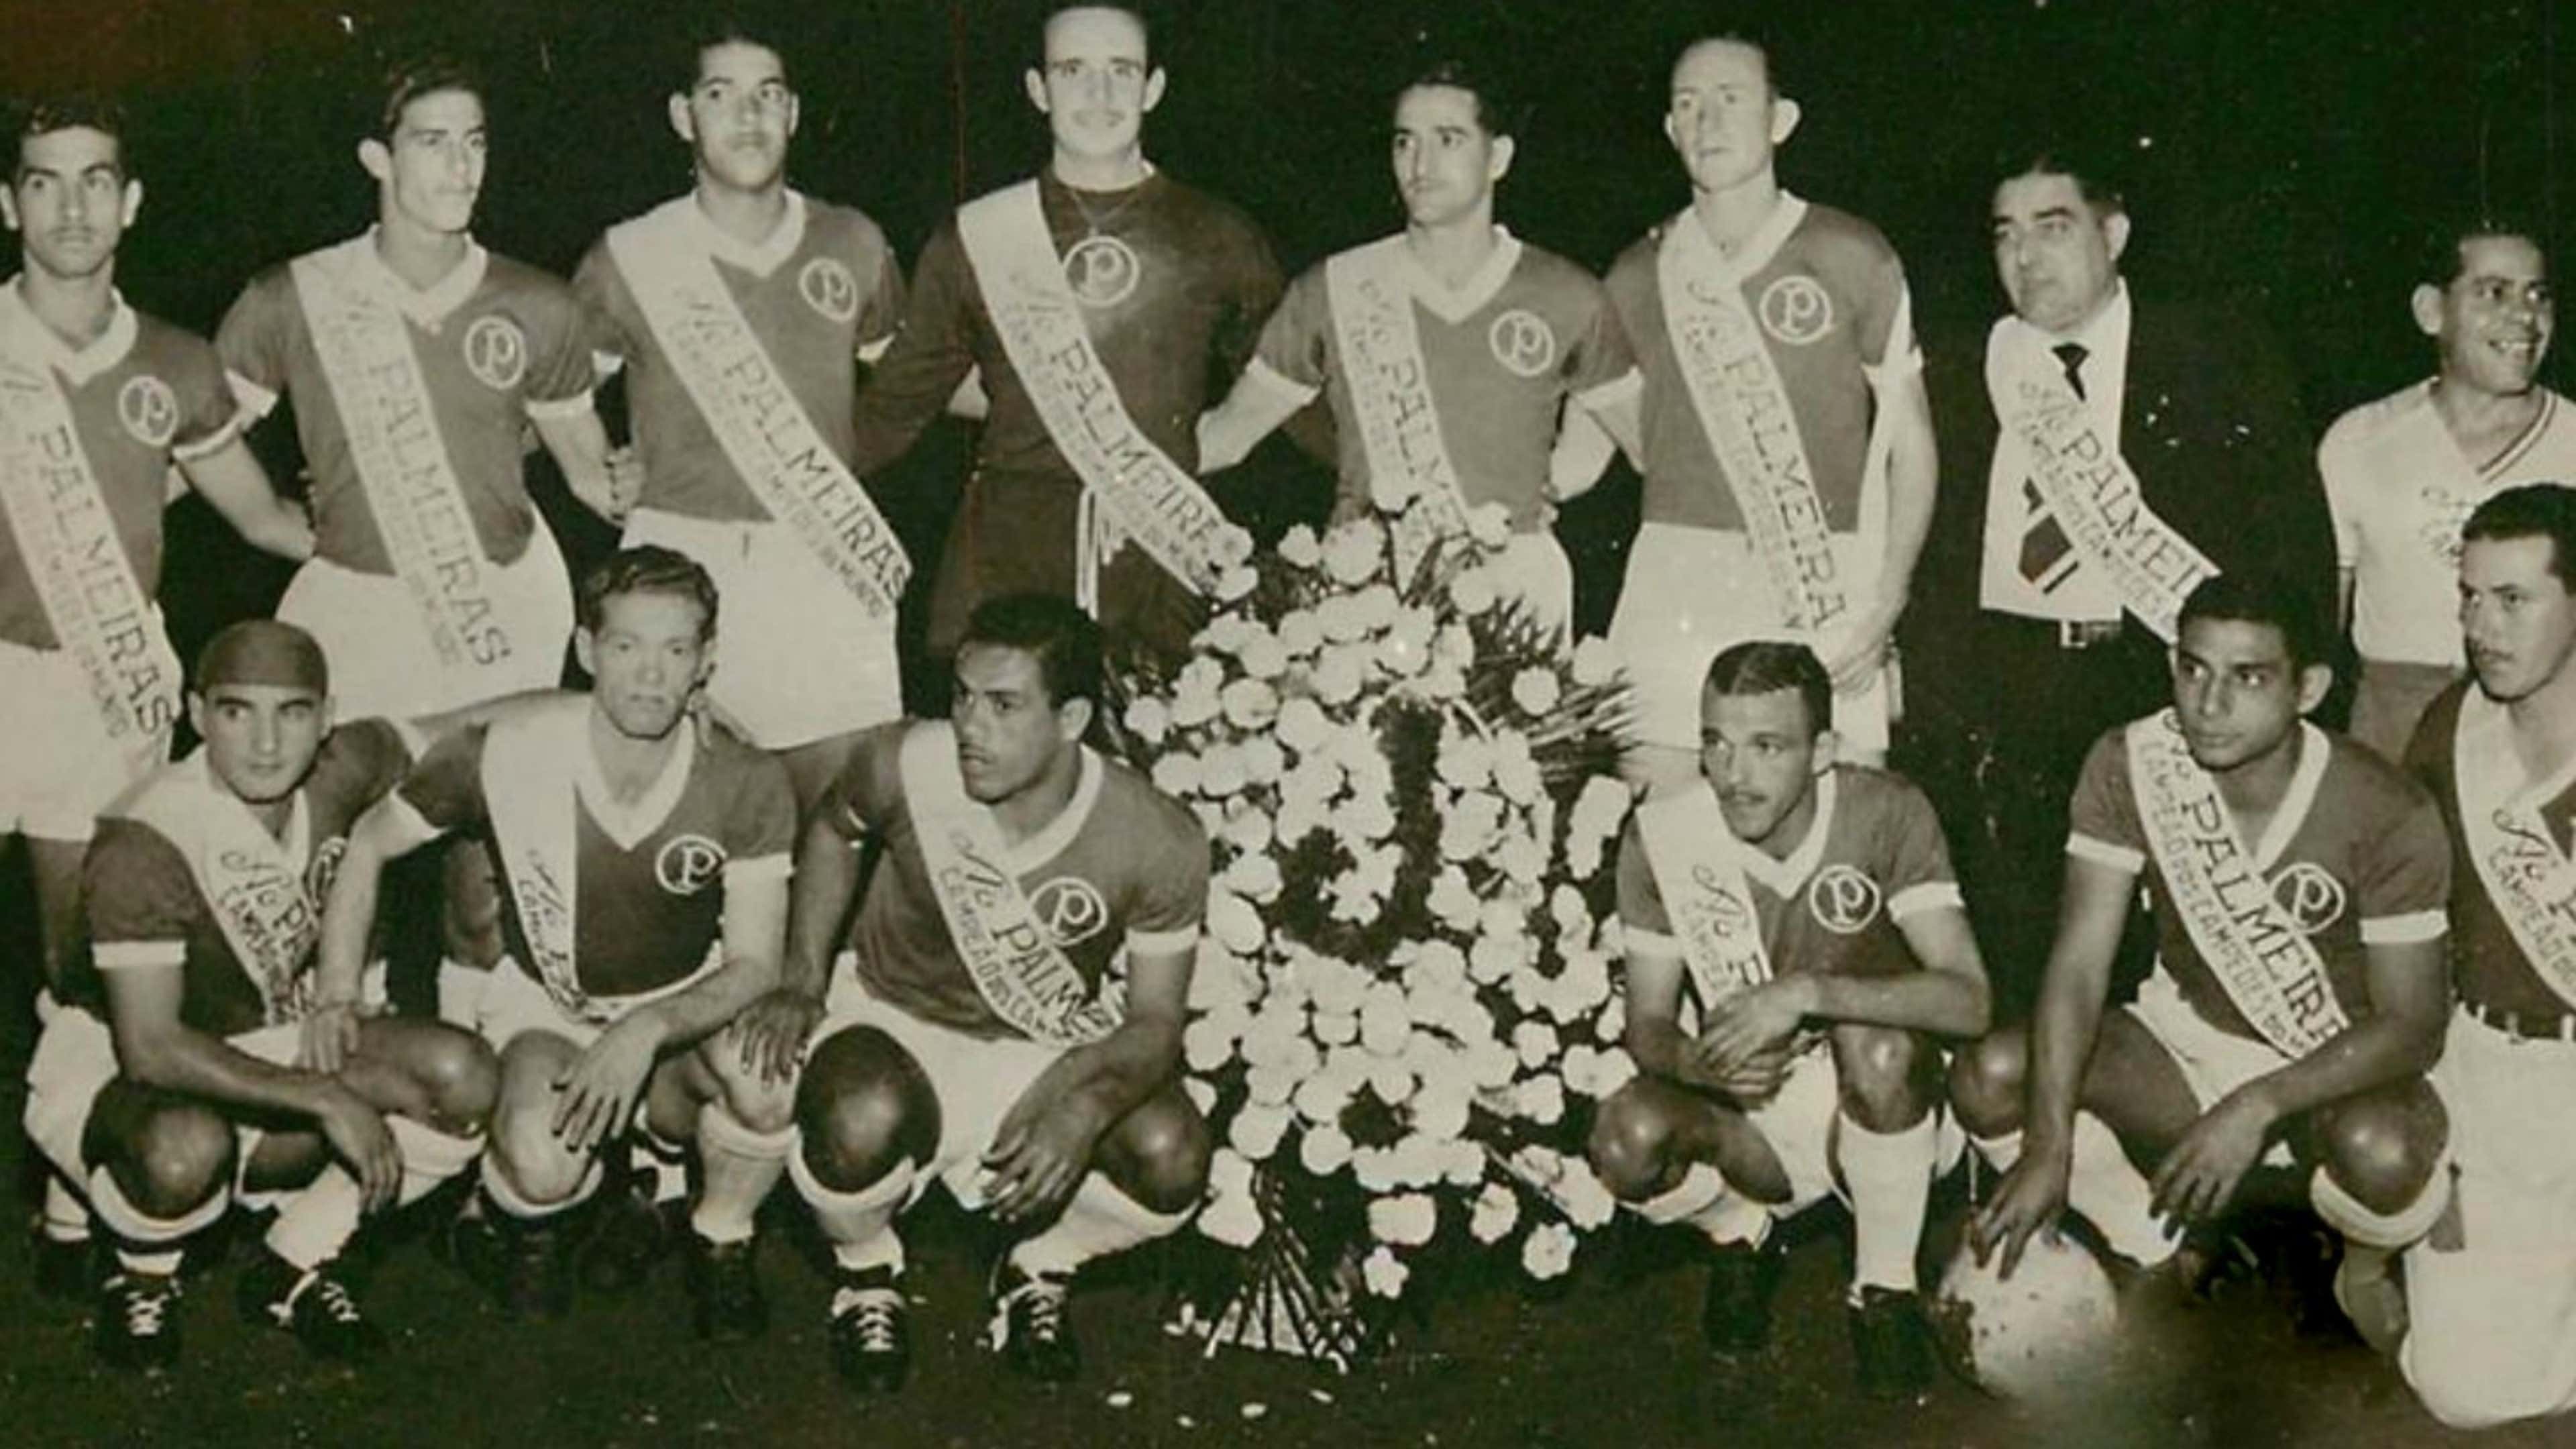 Fluminense - Campeão da Copa Rio Internacional 1952 